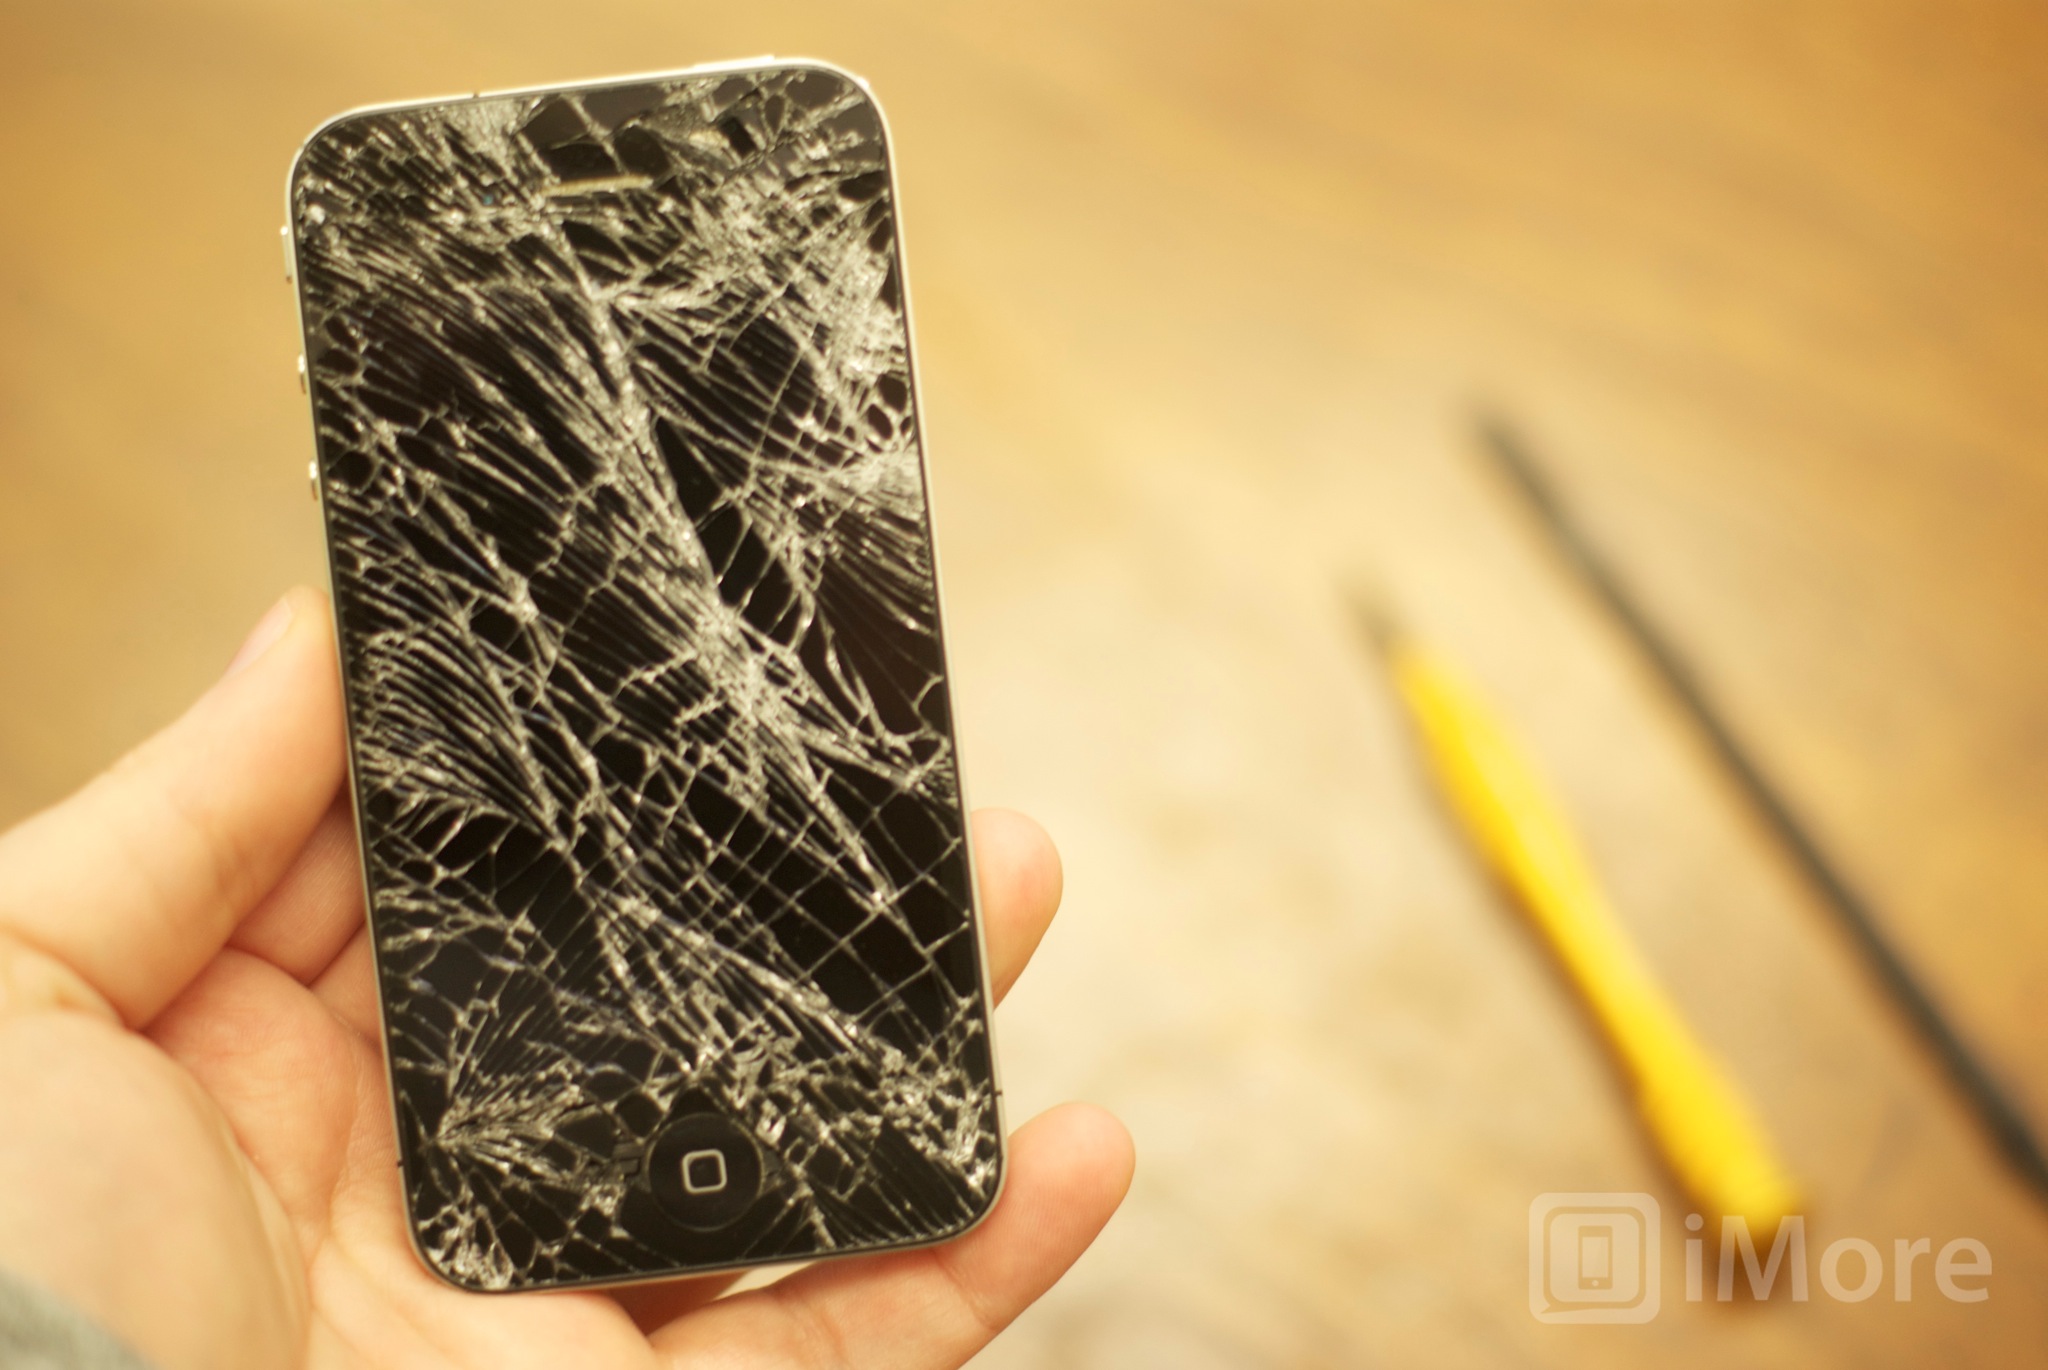 How to DIY repair a Verizon or Sprint iPhone 4 screen